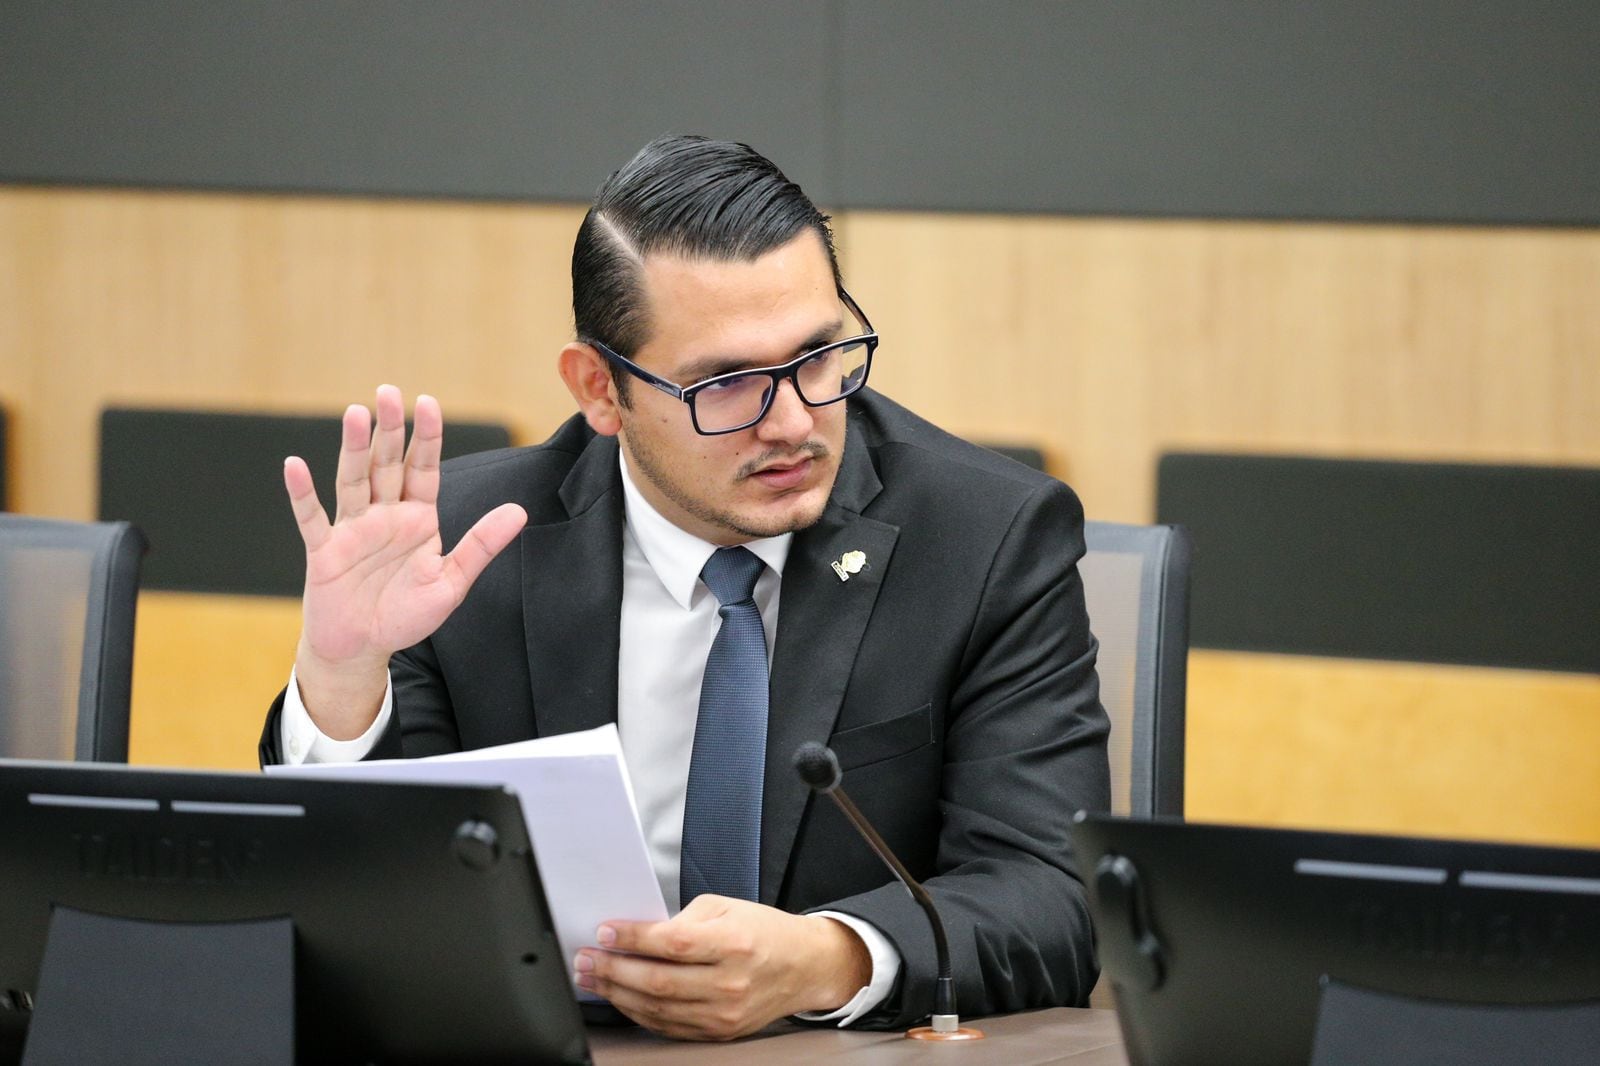 El diputado del Partido Nueva República, David Segura, se retractó de su publicación sobre restablecer la pena de muerte. Foto: Cortesía.